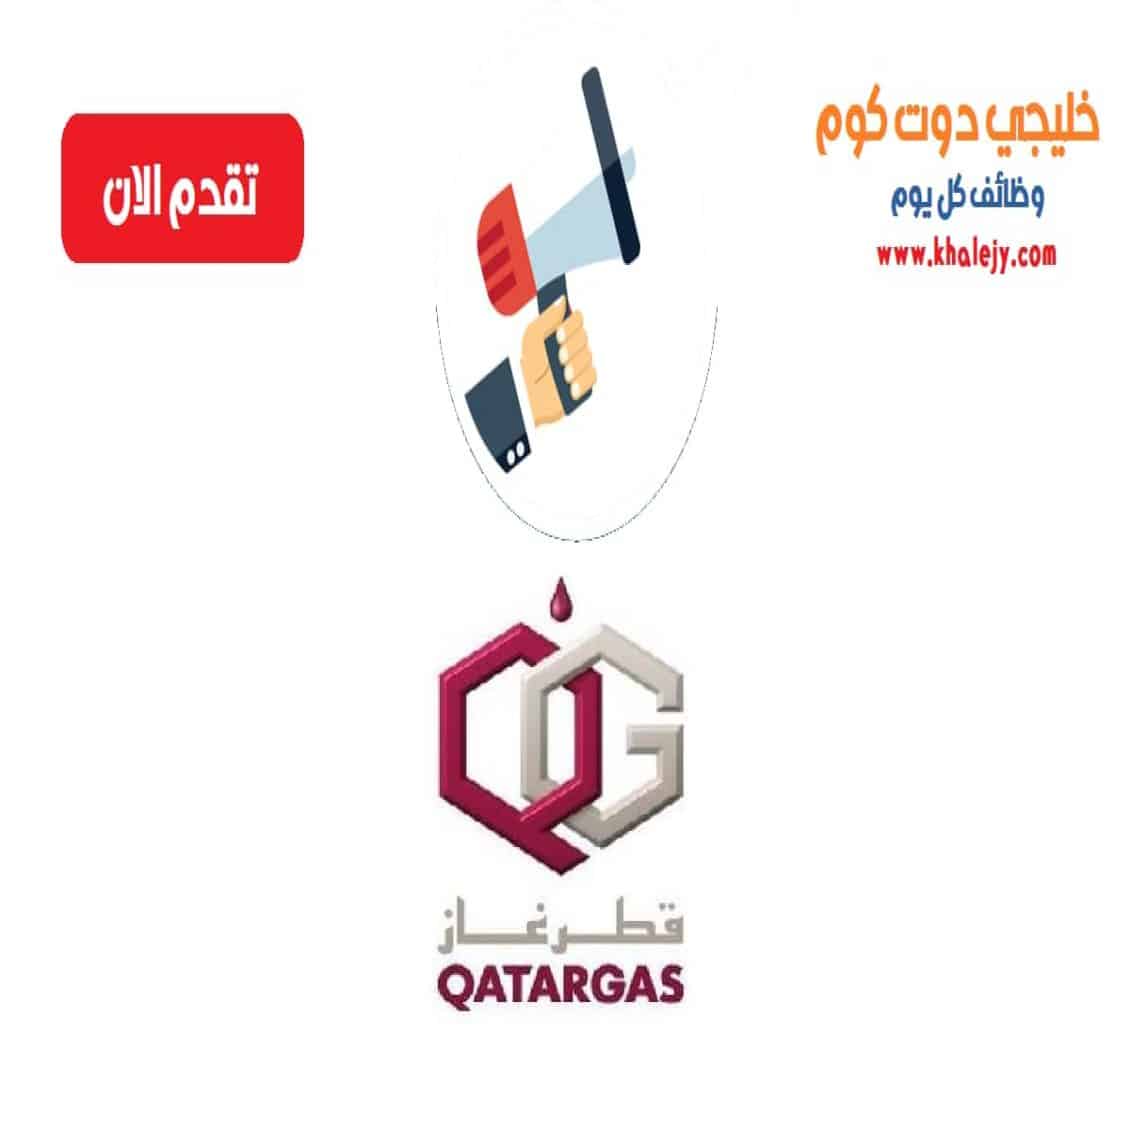 وظائف غاز قطر للمواطنين والاجانب في قطر